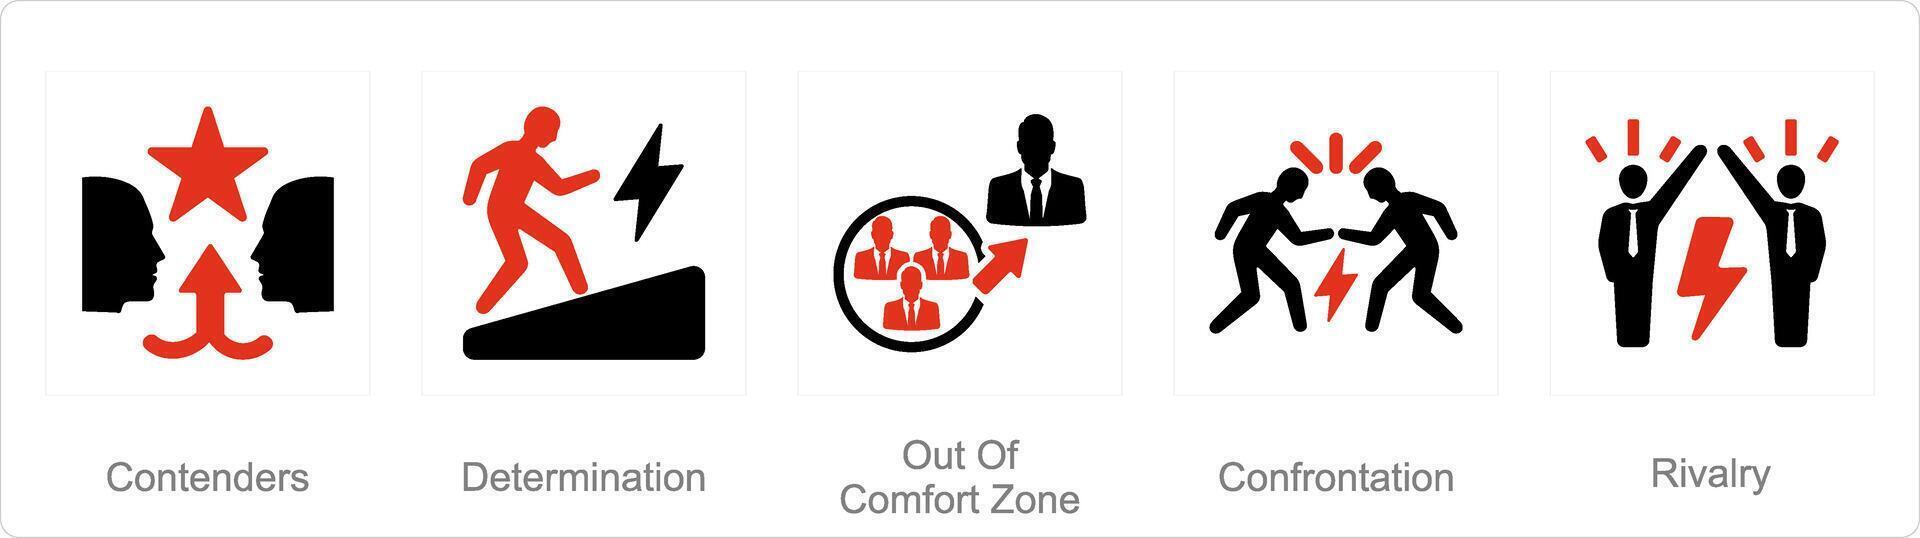 een reeks van 5 uitdaging pictogrammen net zo kanshebbers, bepaling, uit van comfort zone vector